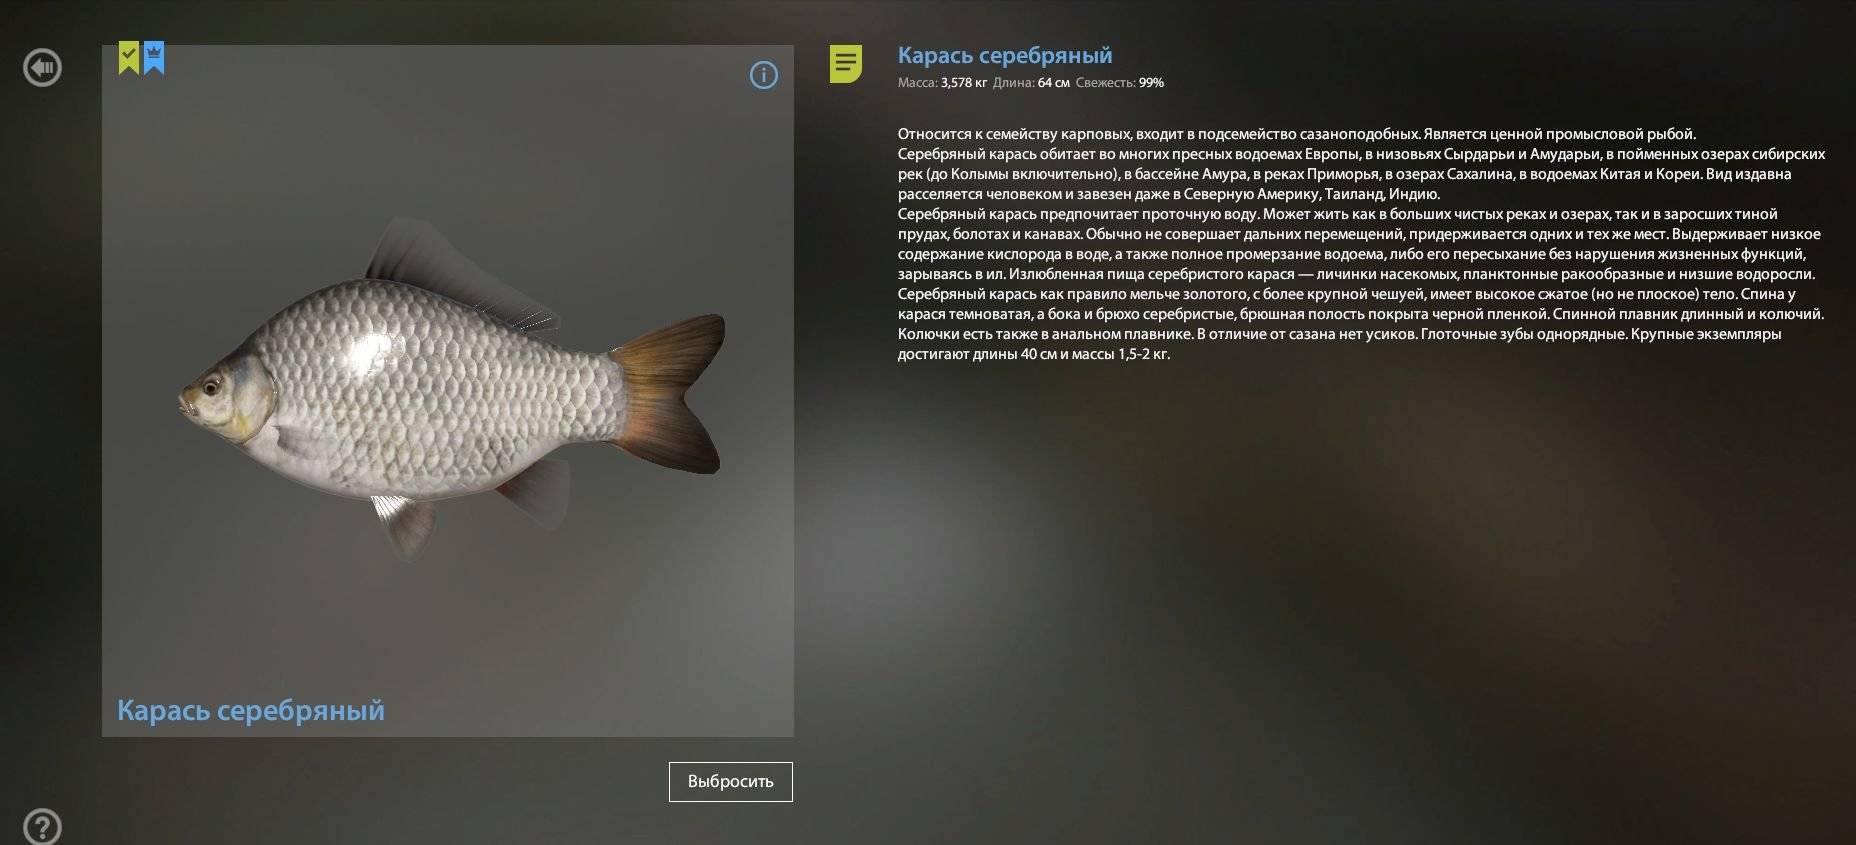 Морской карась-ласкирь фото и описание – каталог рыб, смотреть онлайн